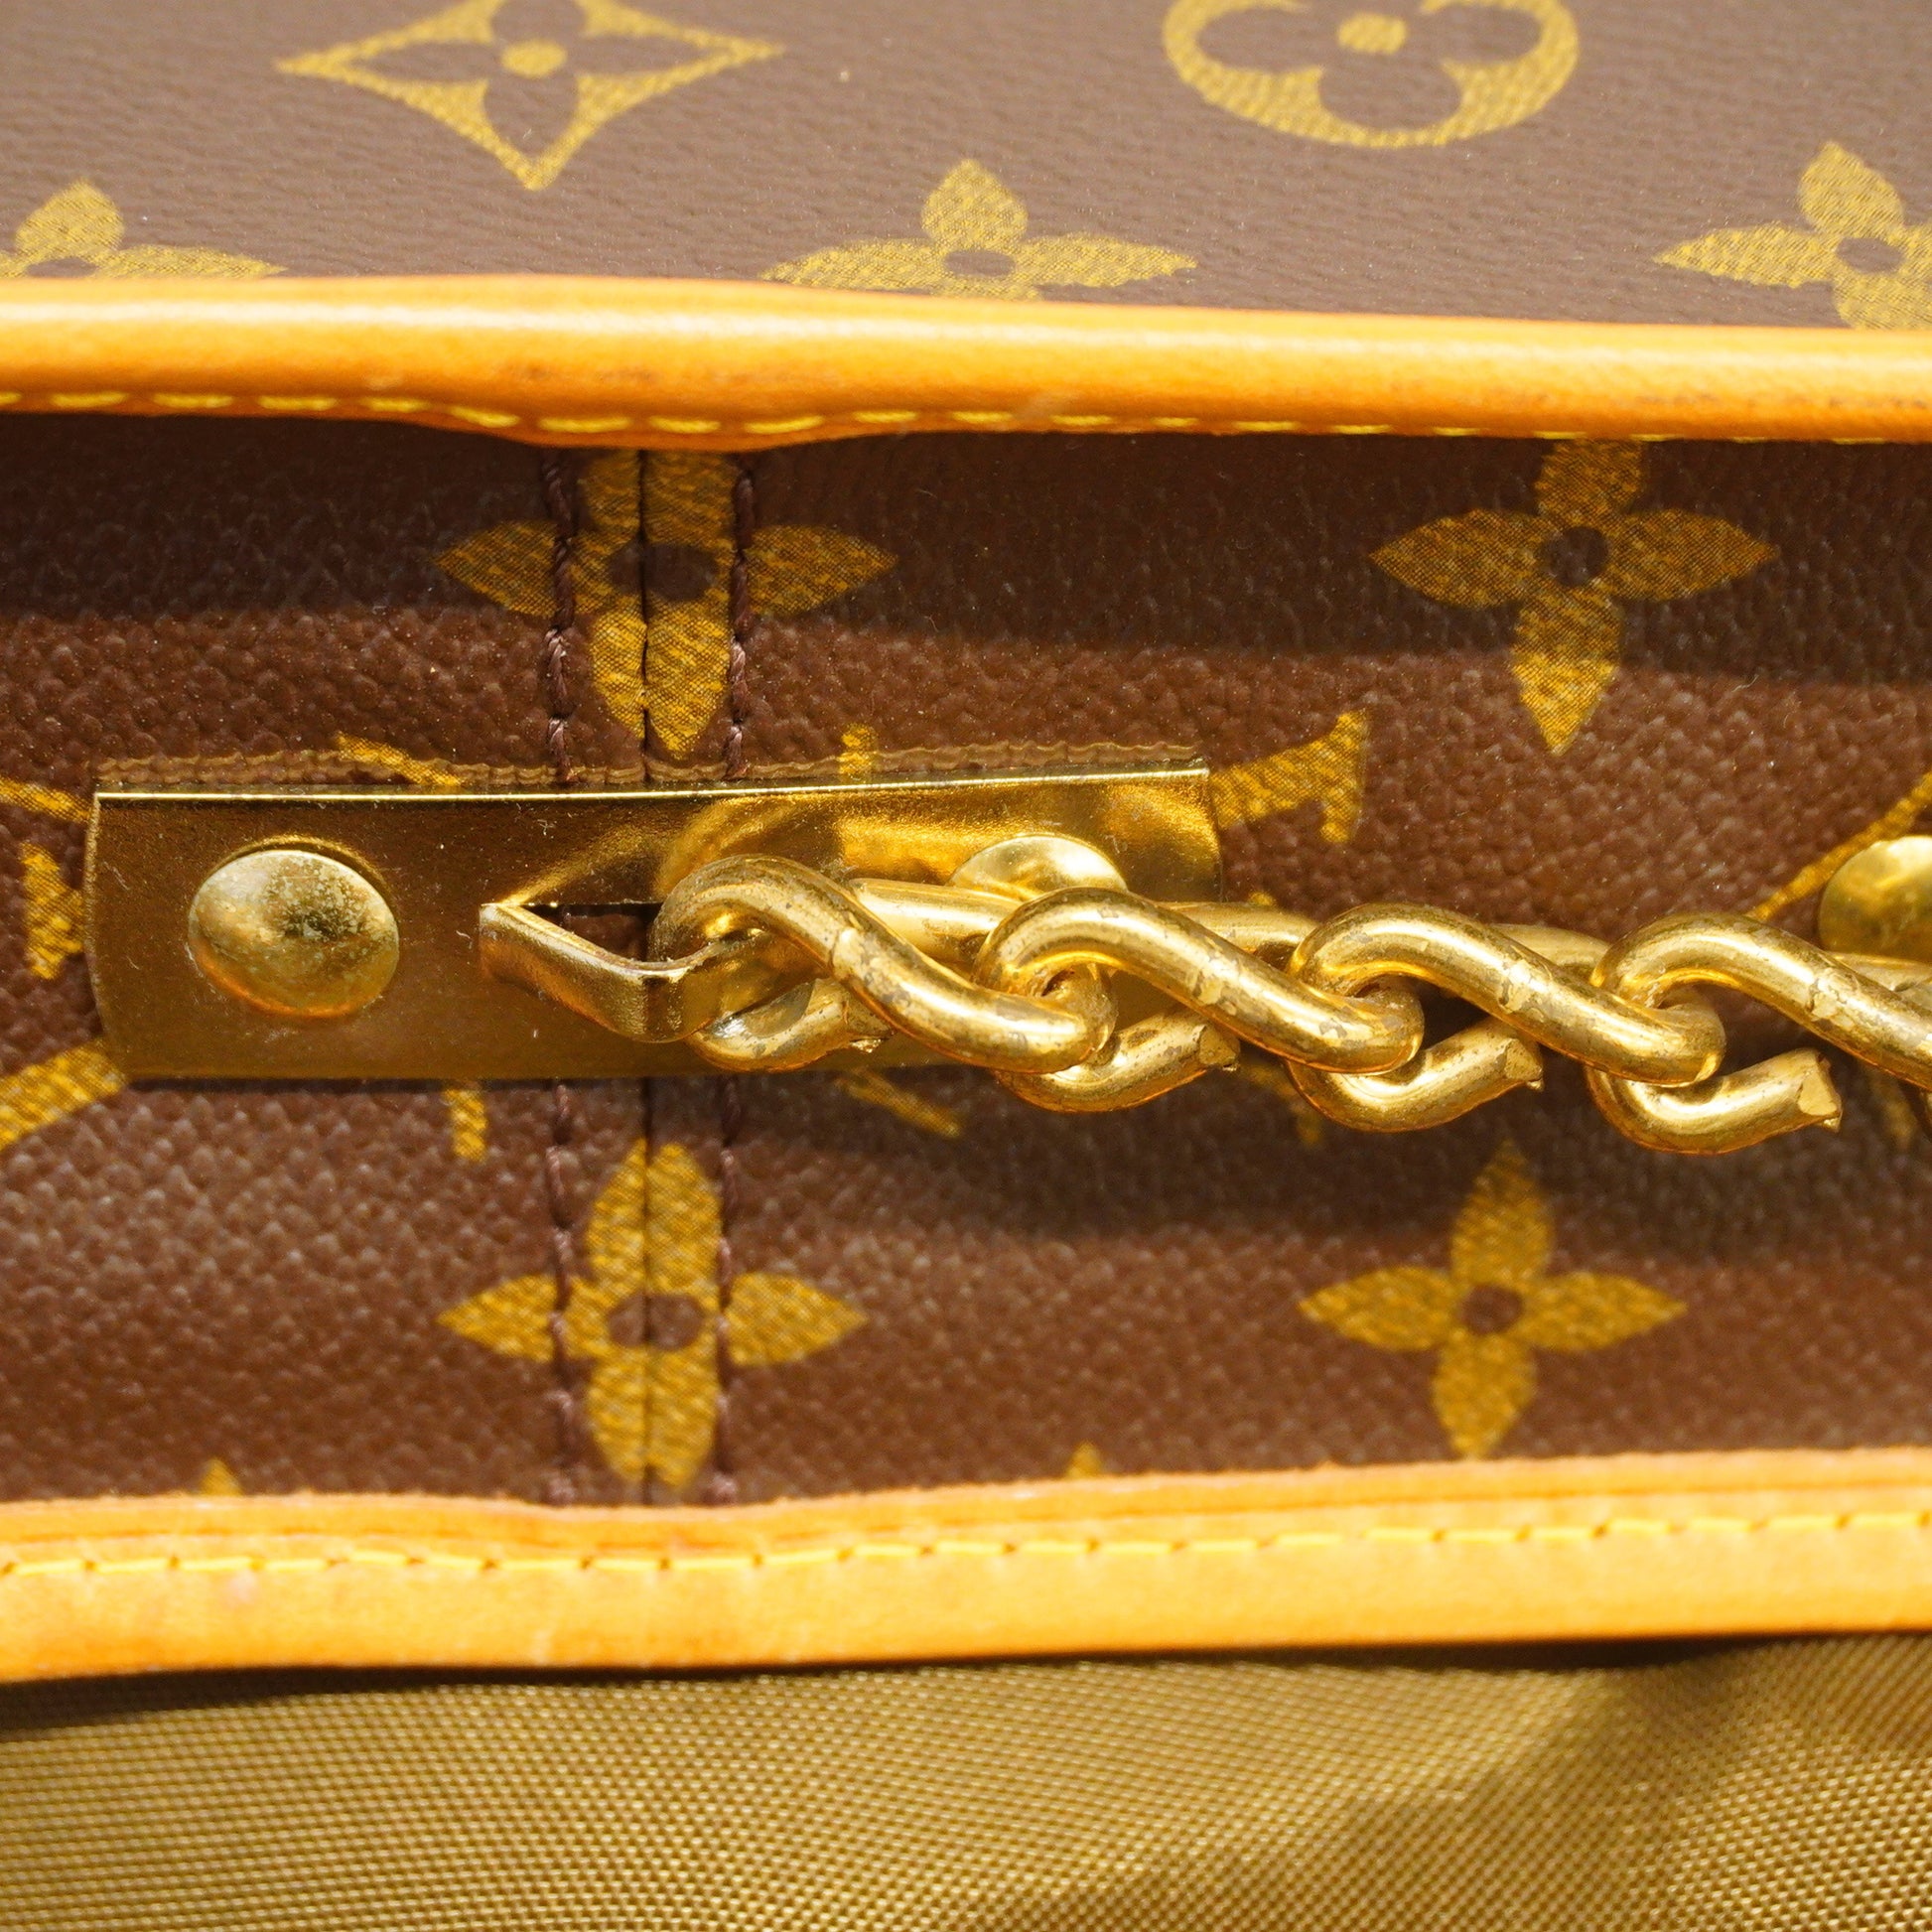 Vintage Louis Vuitton Garment Carry On Suitcase